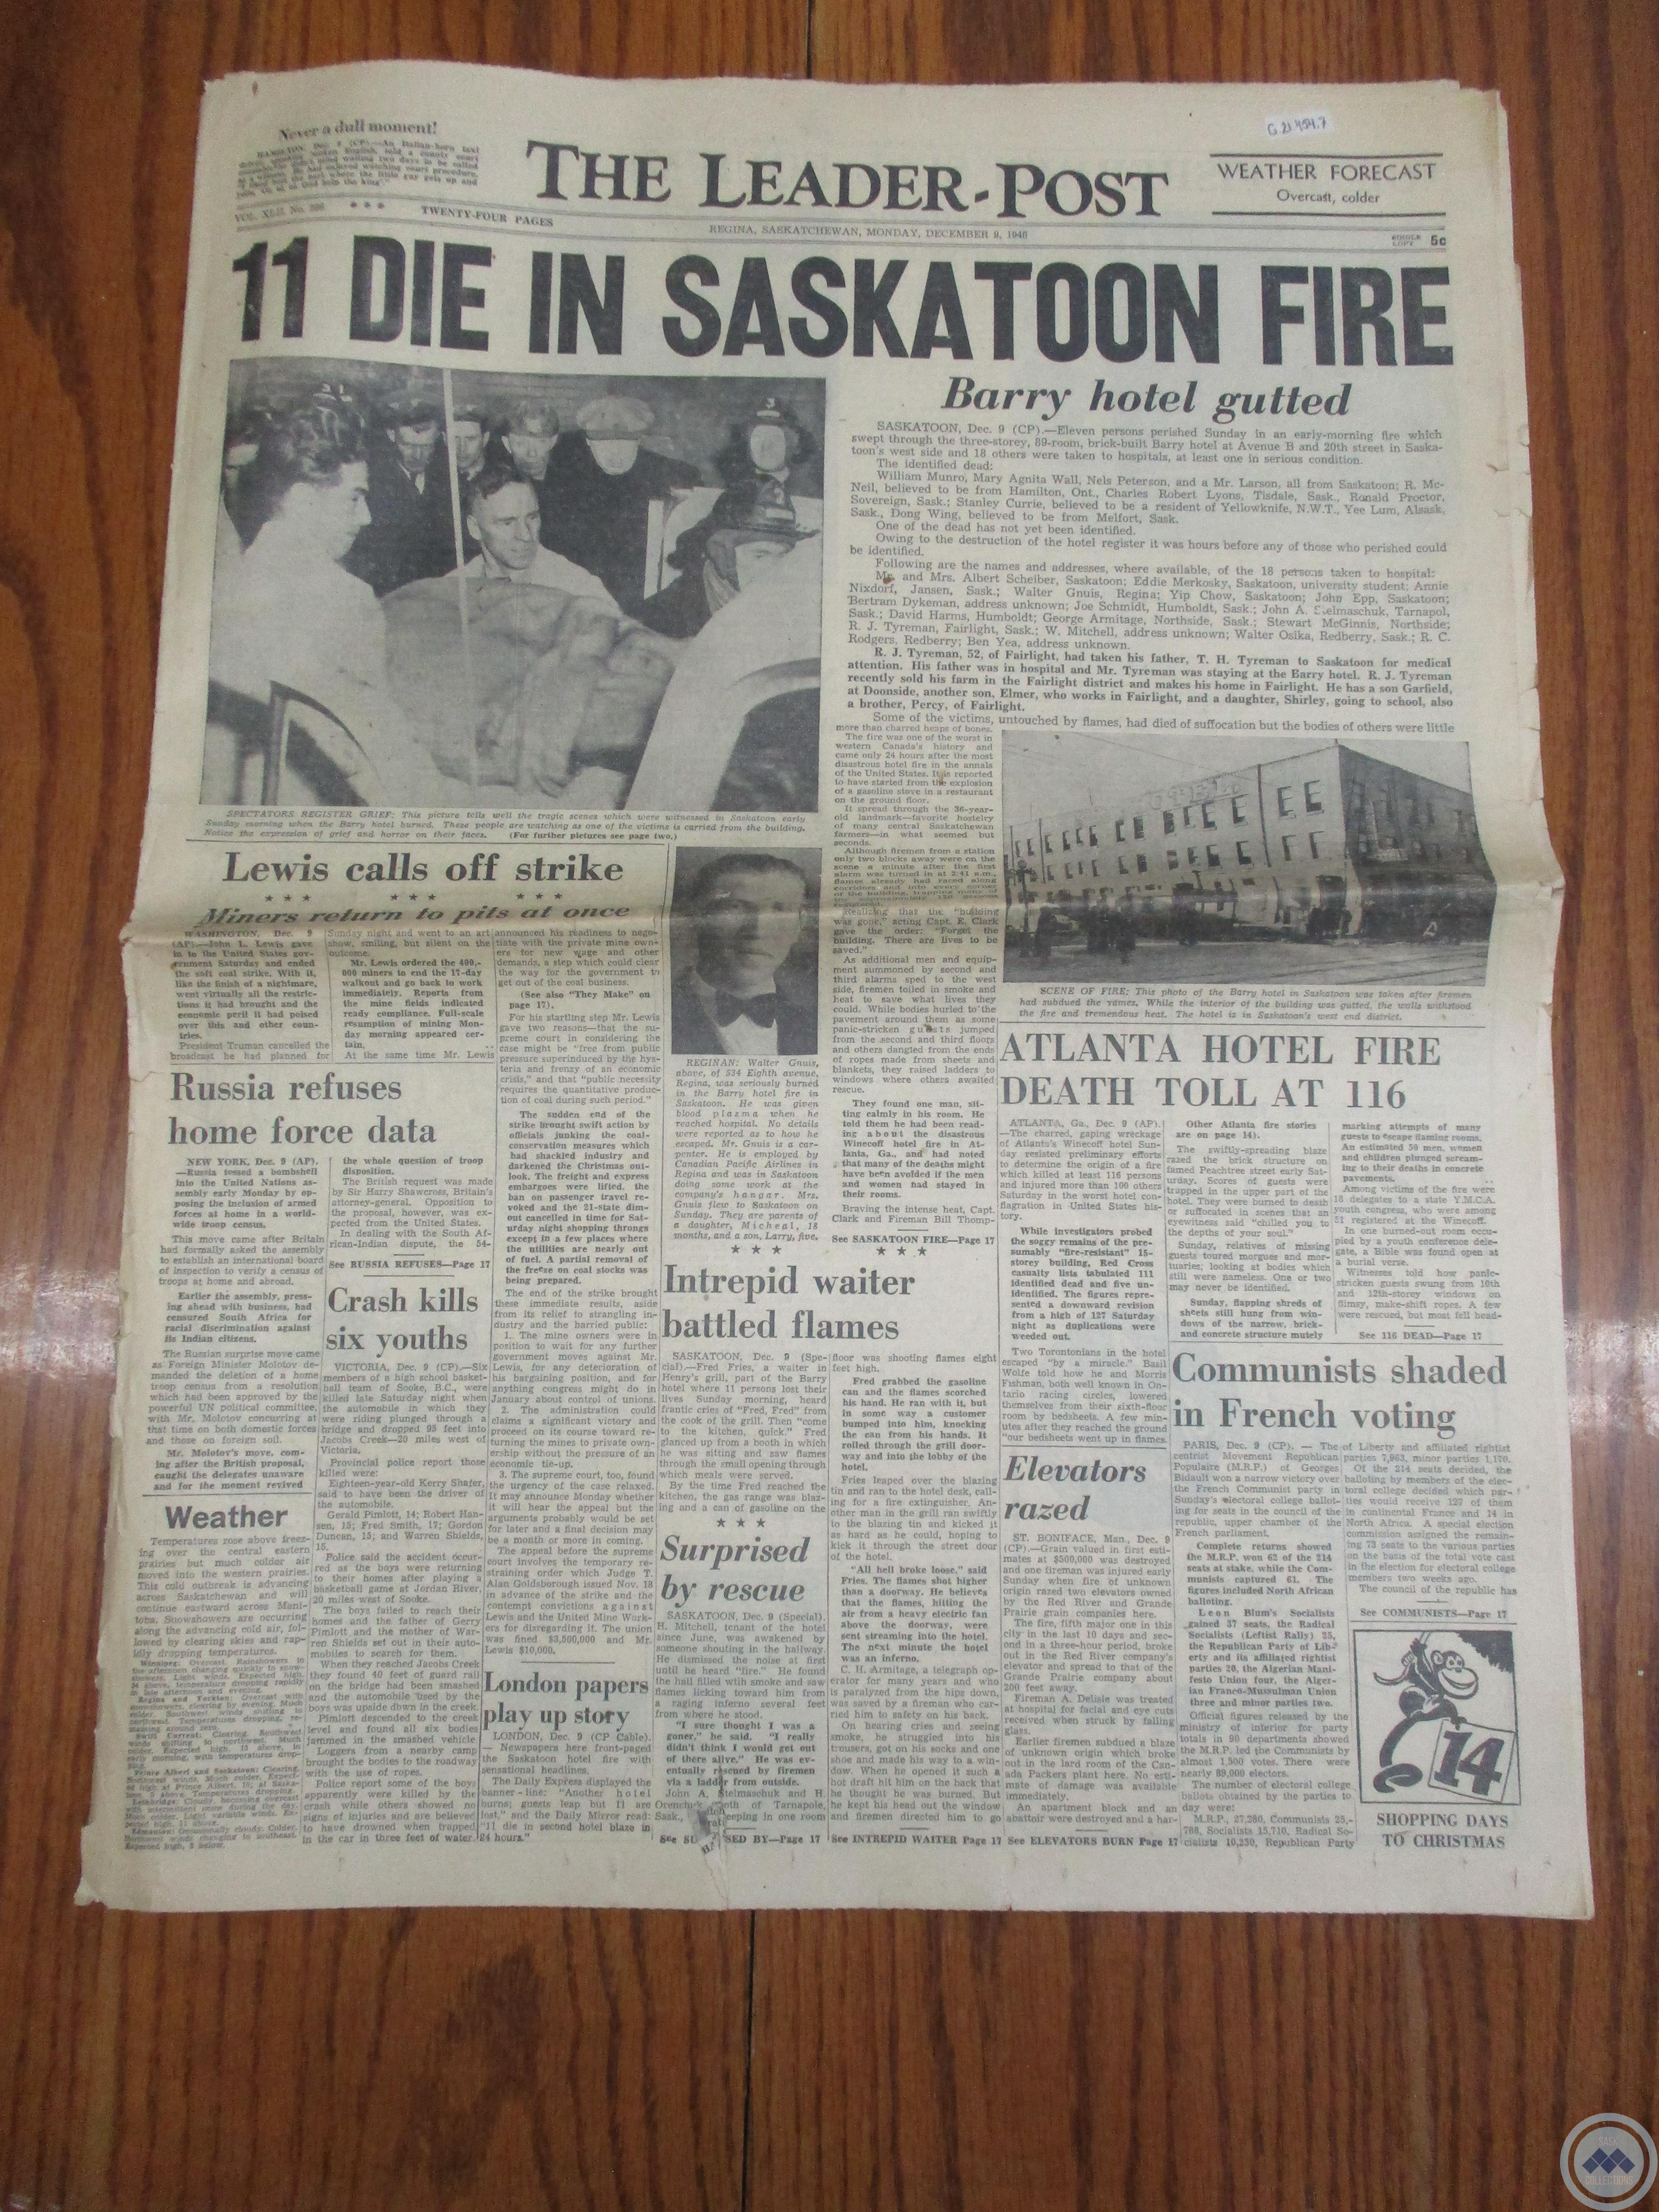 The Leader-Post: “11 Die in Saskatoon Fire” (December 9, 1946) 